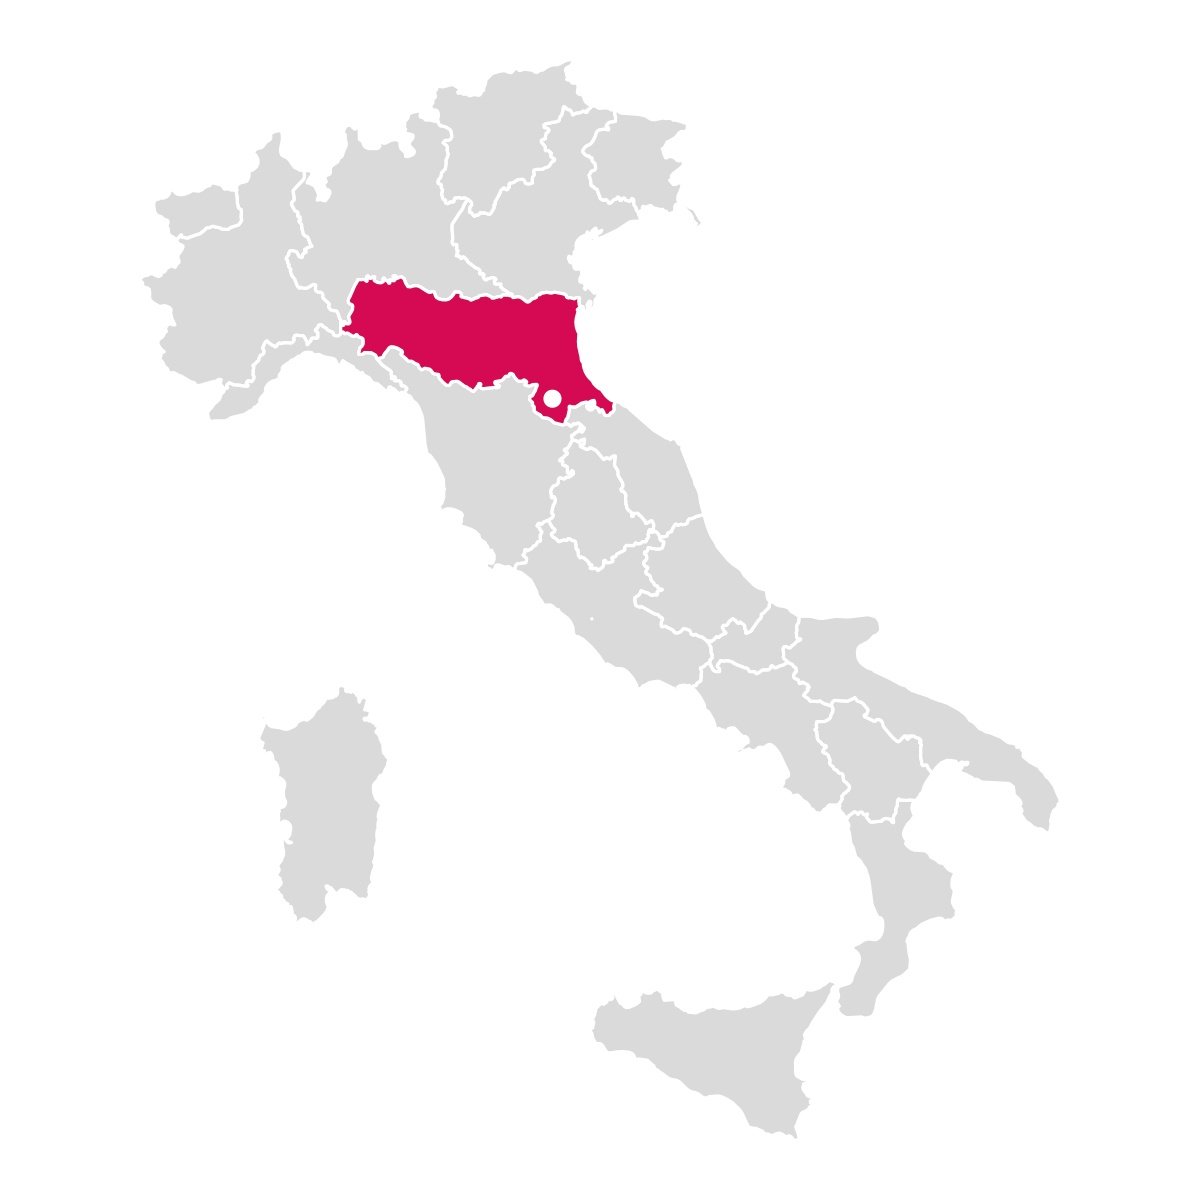 Valbonella è apochi passi dal Parco Nazionale delle Foreste Casentinesi tra Emilia-Romagna e Toscana